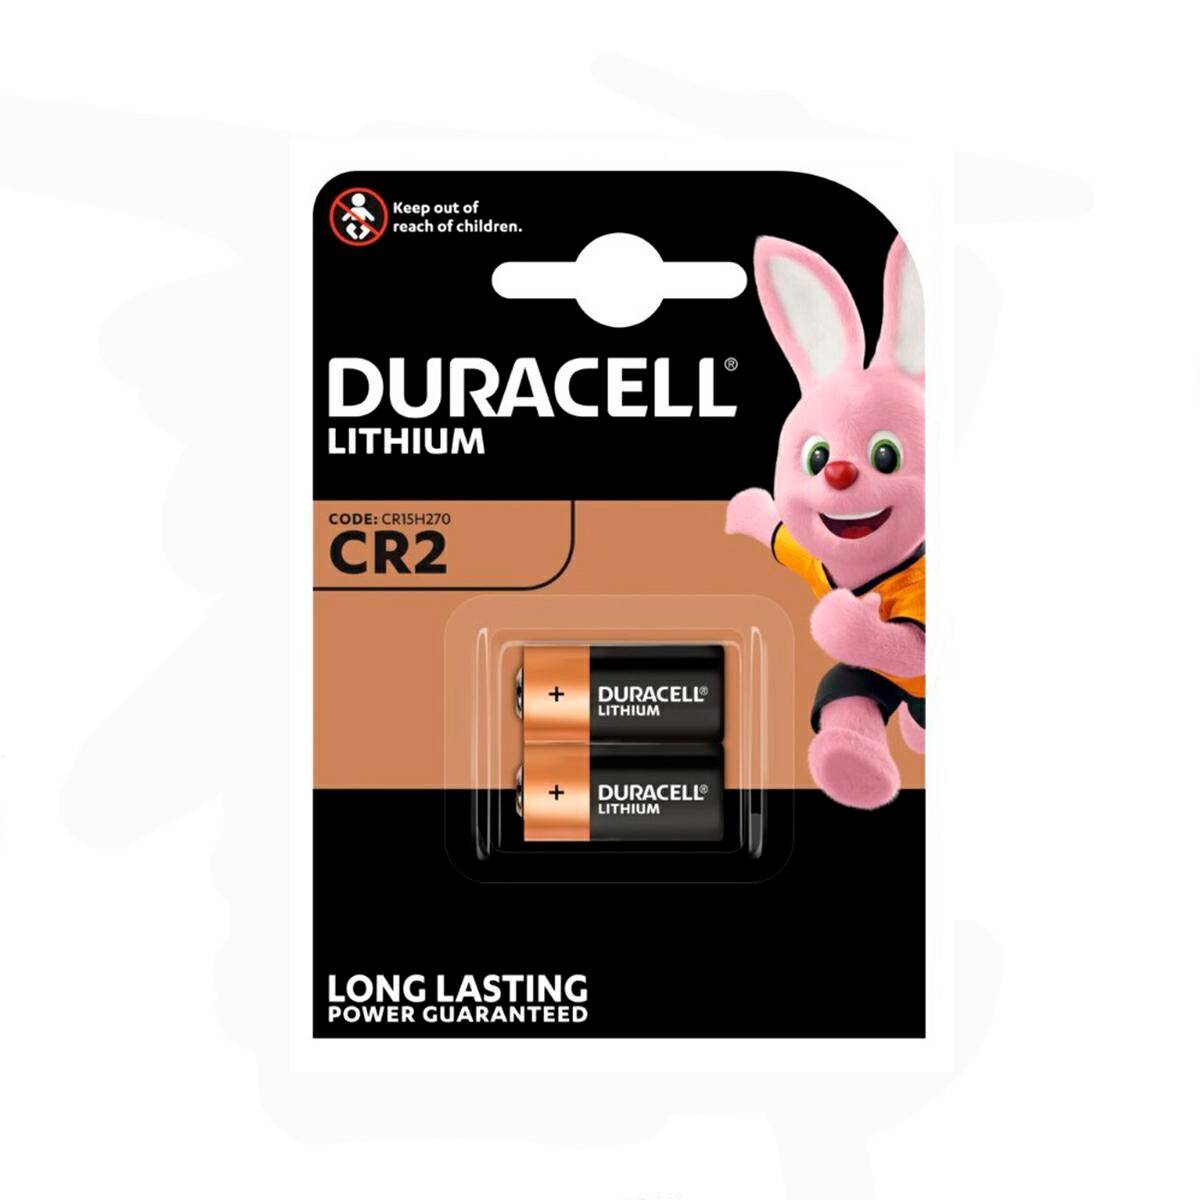 Batterie Duracell CR2 CR15H270 3V 2 stck